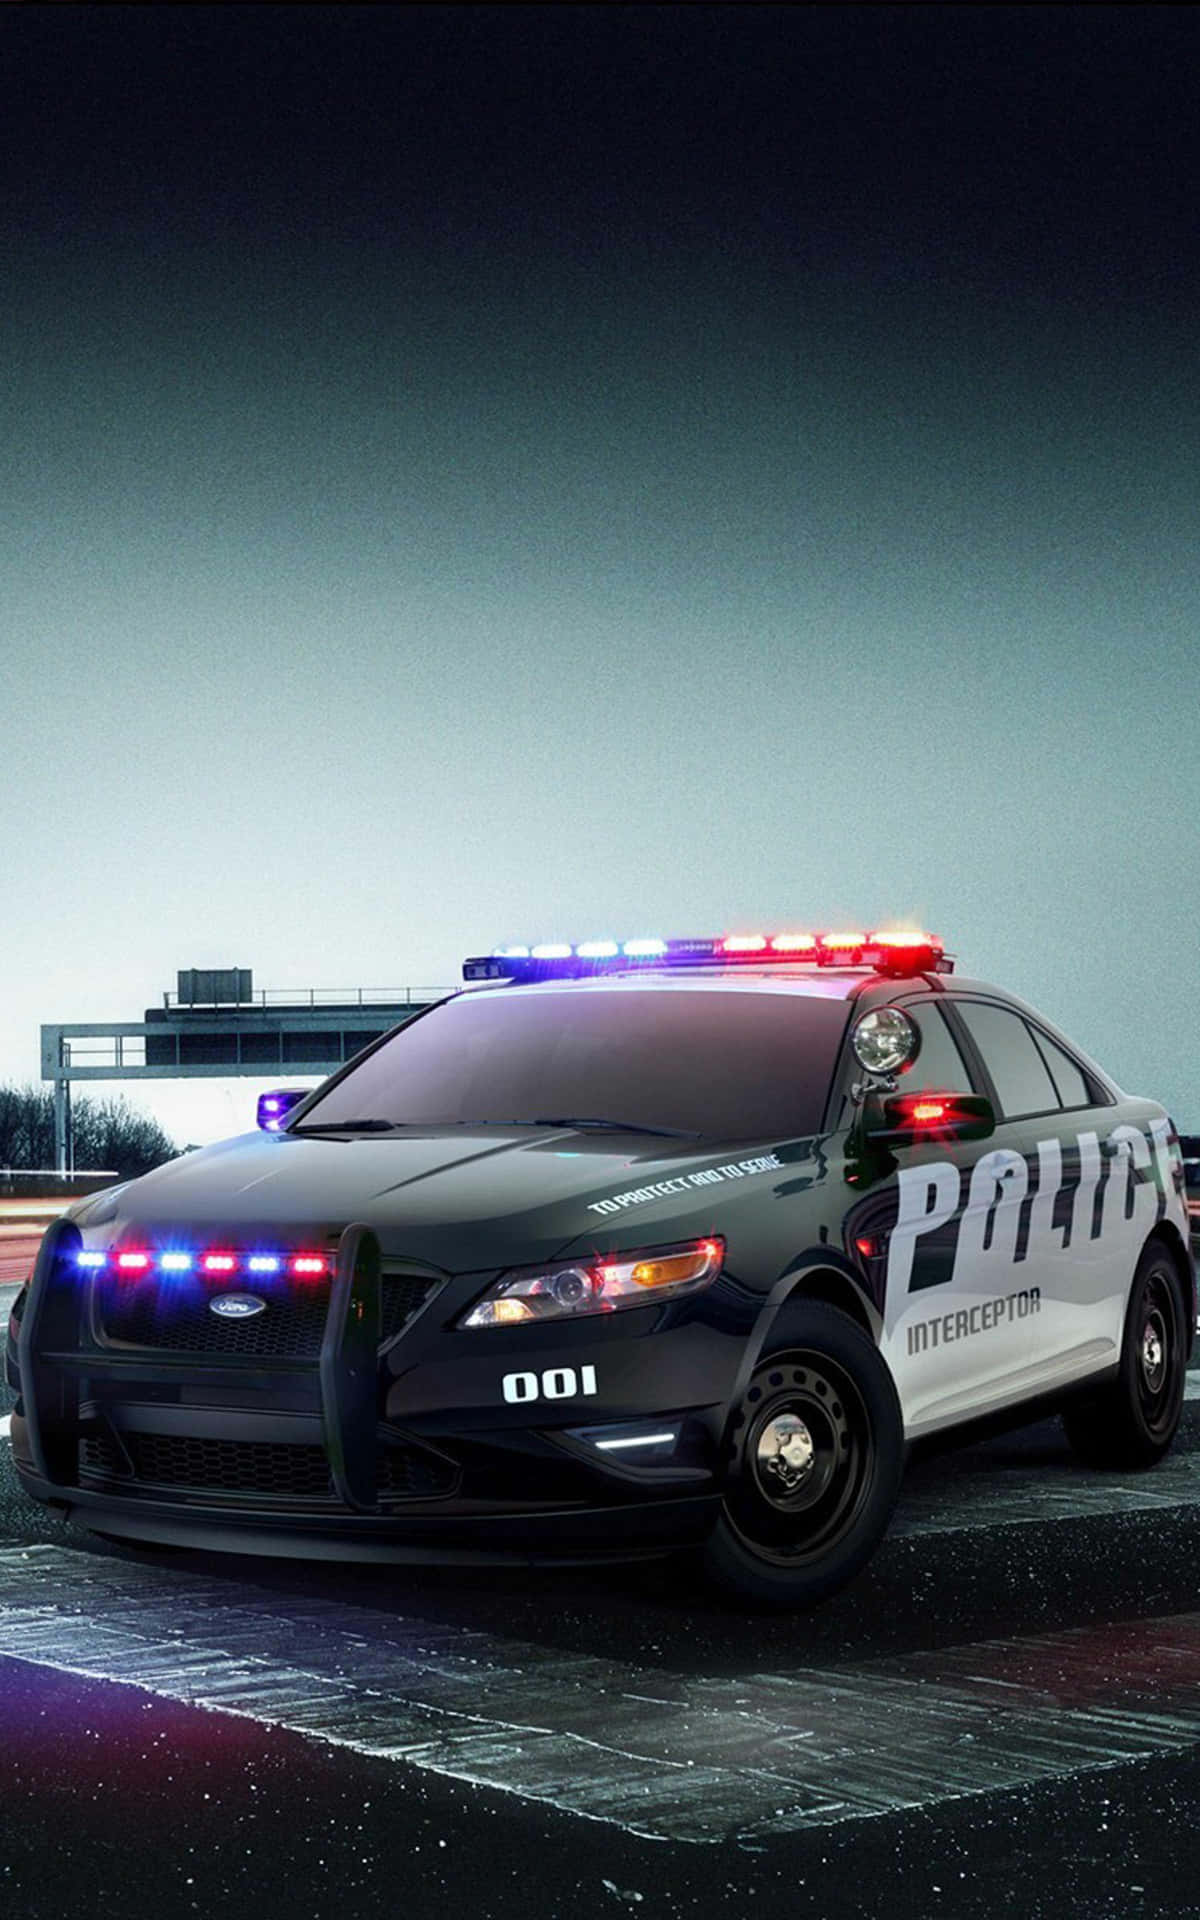 Tollepolizeiauto Hintergrundbild Beste Auto Hintergrund